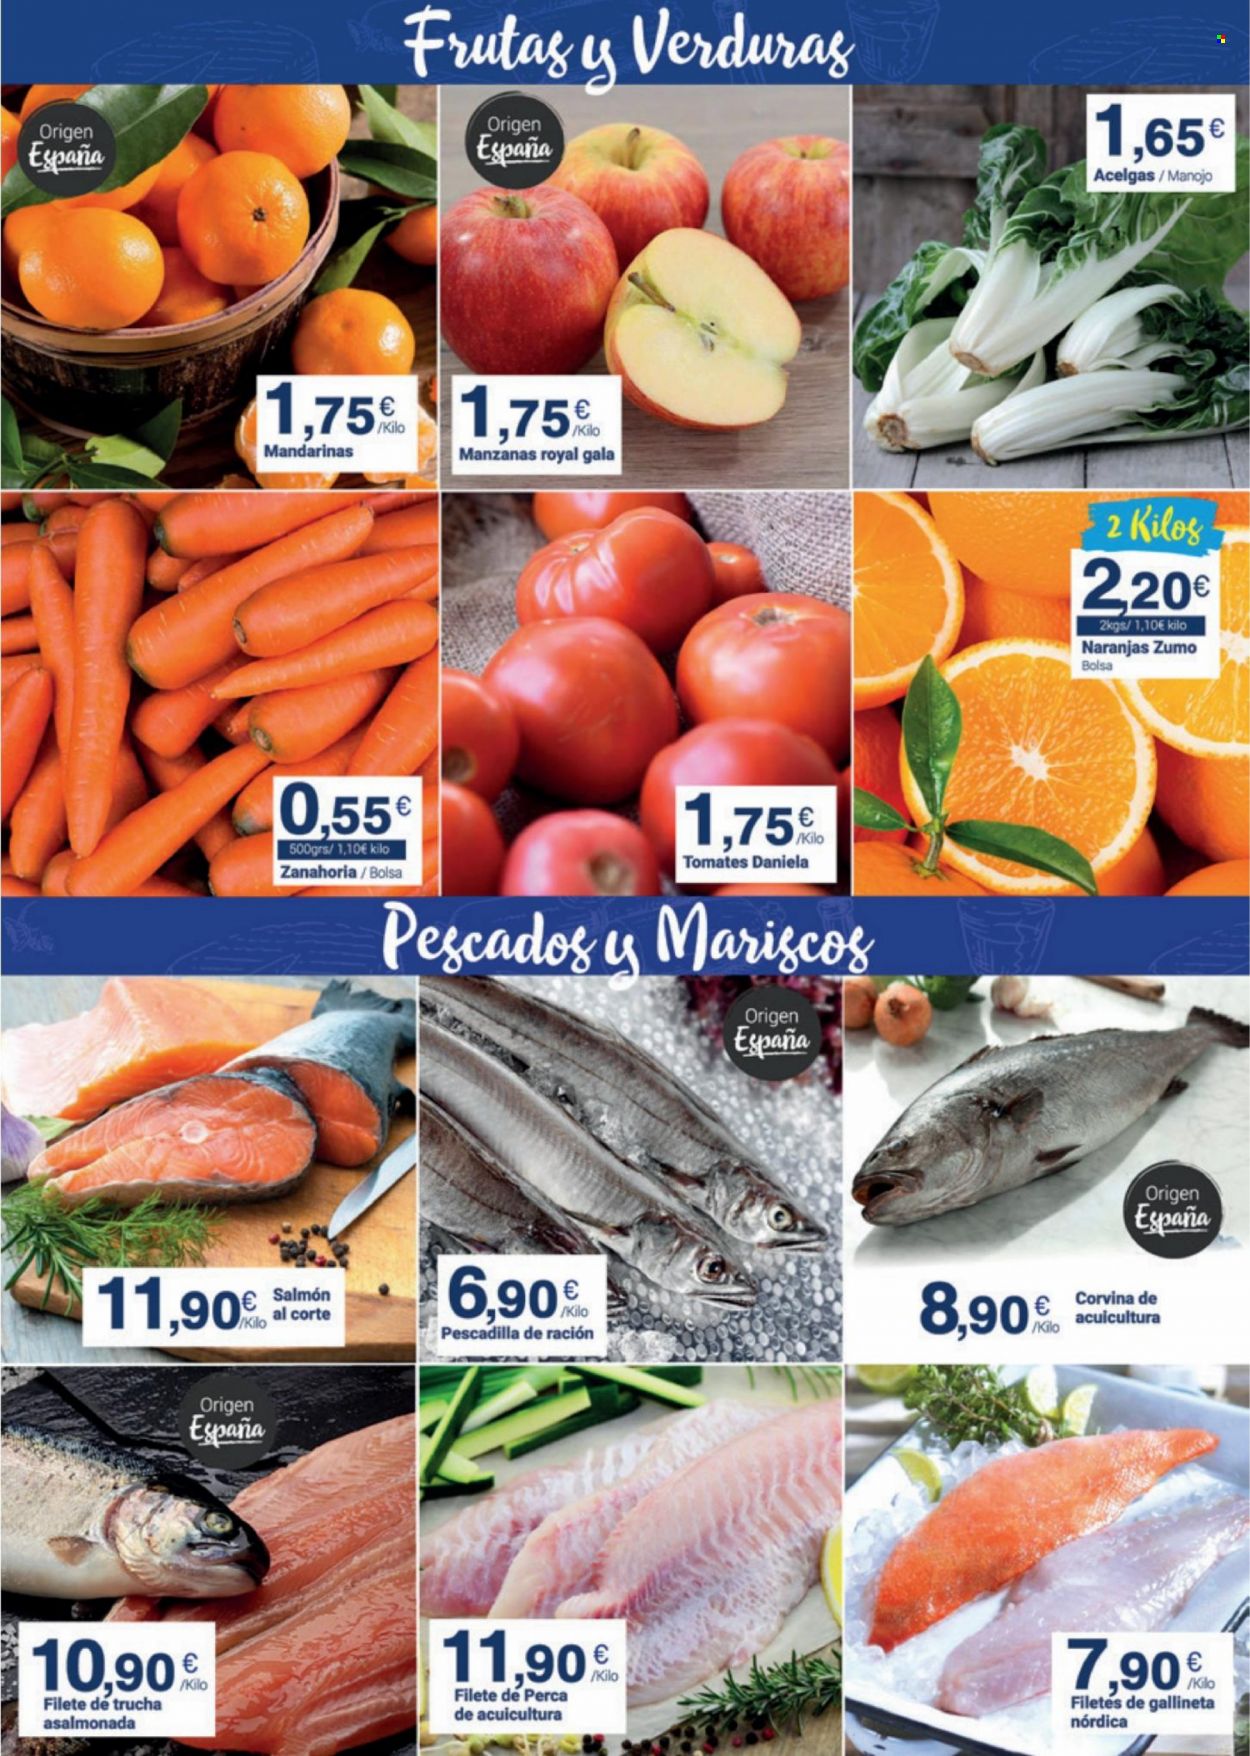 thumbnail - Folleto actual Supermercados Plaza - 17/01/22 - 31/01/22 - Ventas - tomate, pescadilla, salmón, zumo. Página 3.